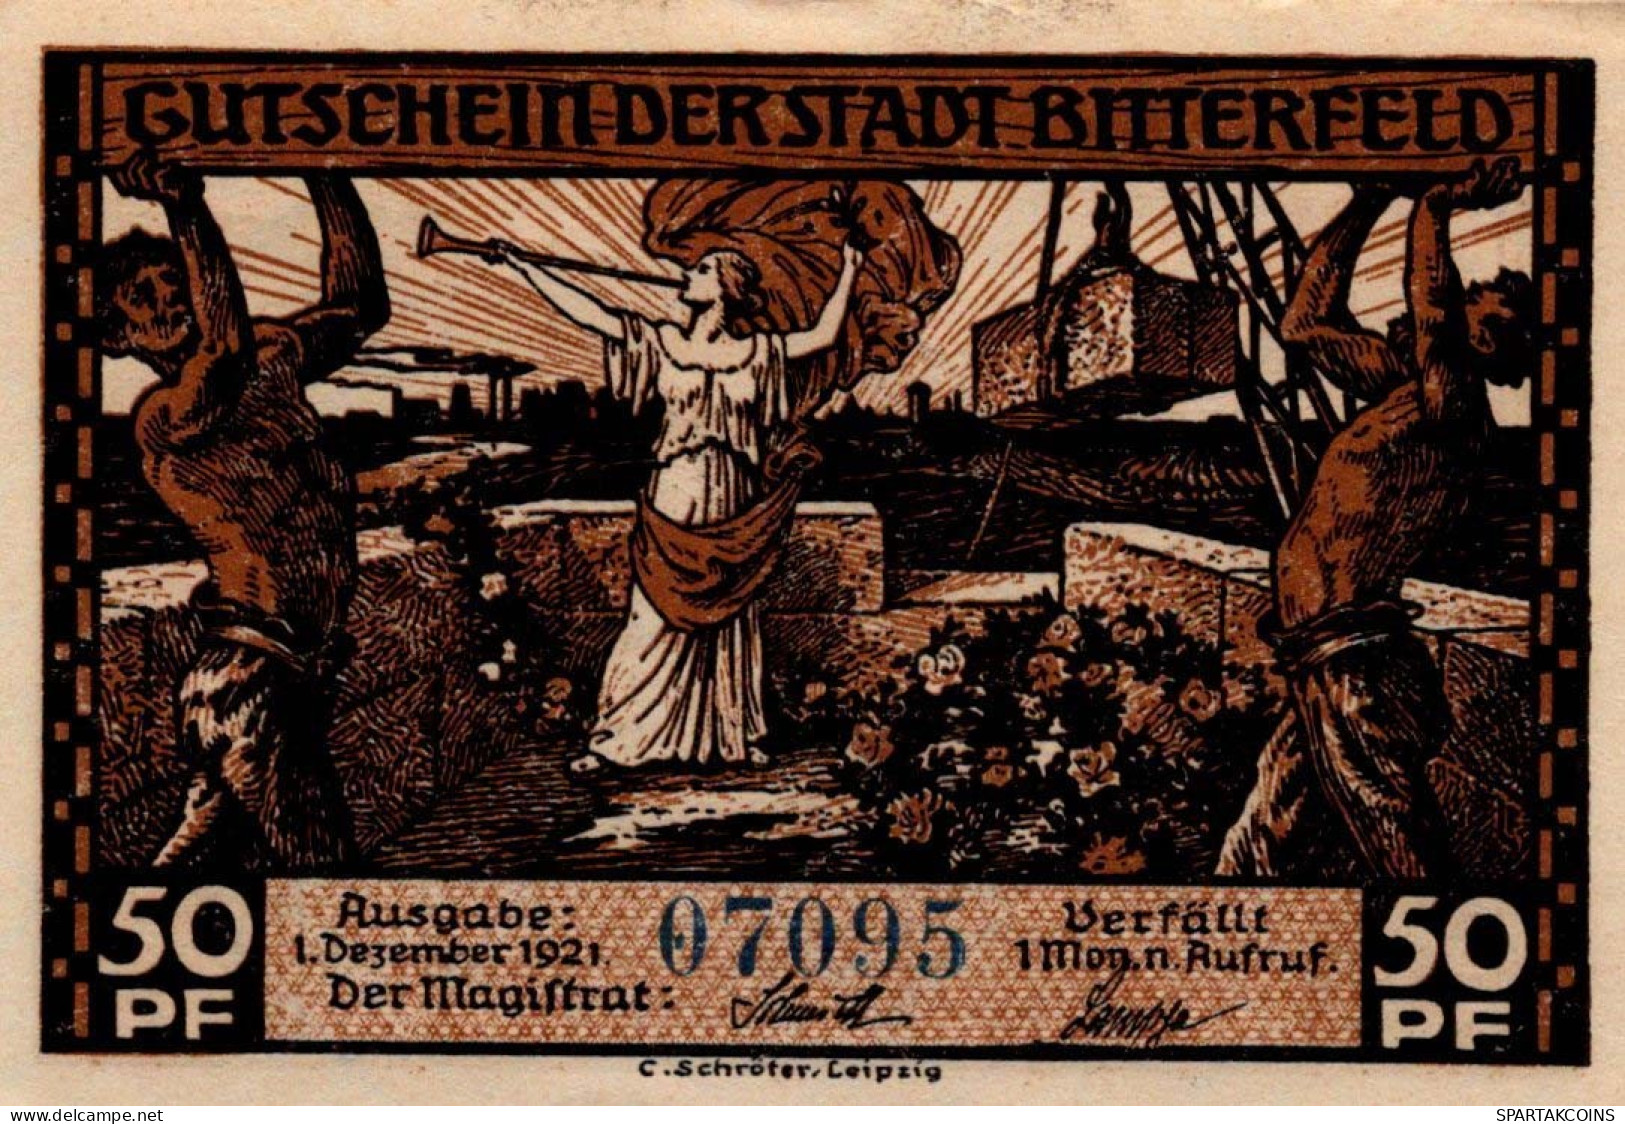 50 PFENNIG 1921 Stadt BITTERFIELD Westphalia UNC DEUTSCHLAND Notgeld #PA222 - [11] Emissioni Locali